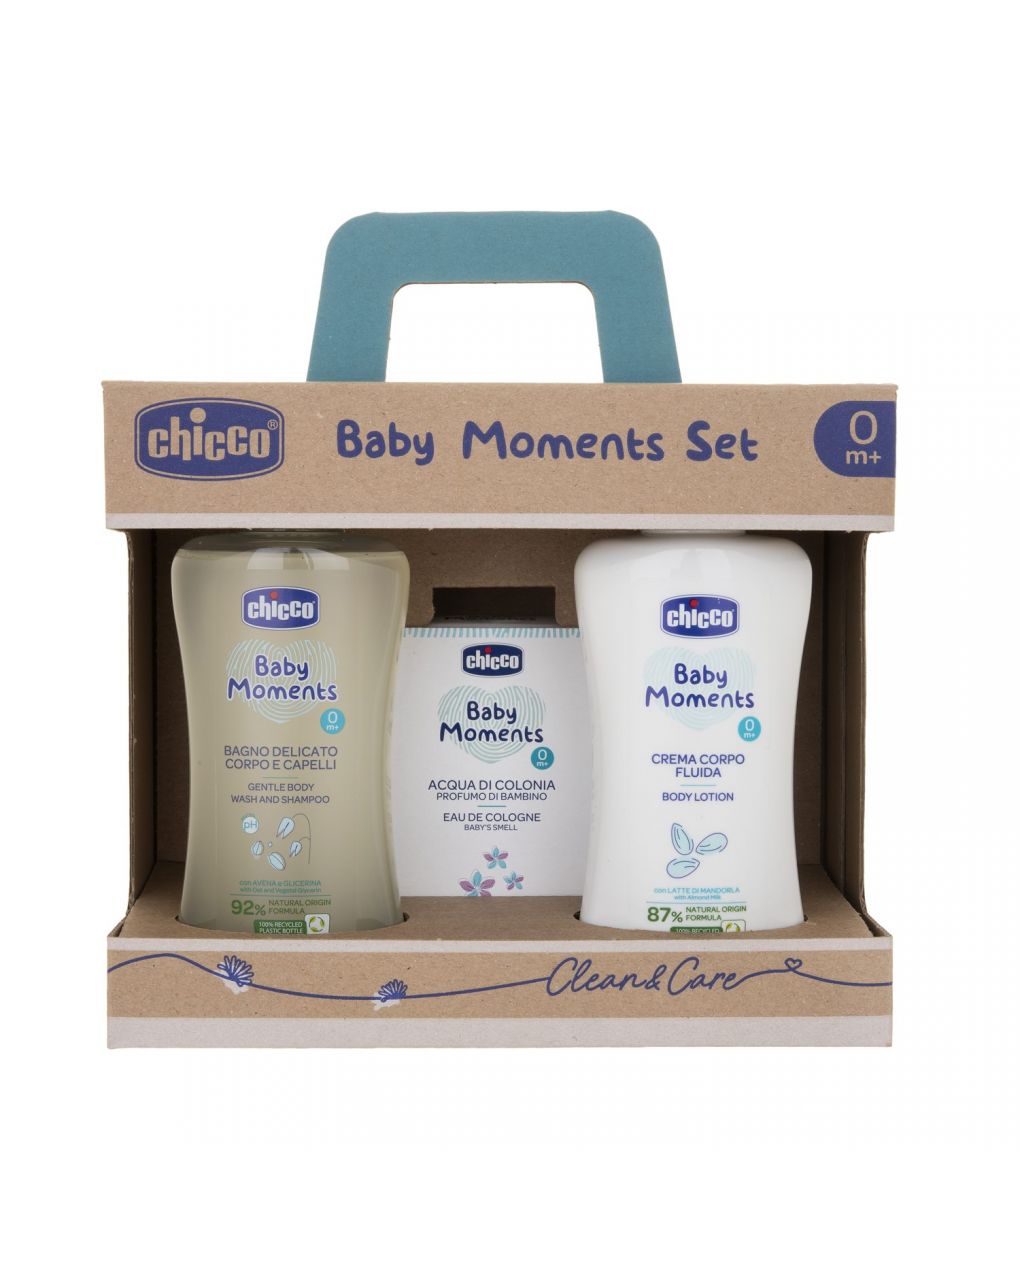 Baby moments set 3 bagno corpo/capelli, crema corpo e colonia - Chicco